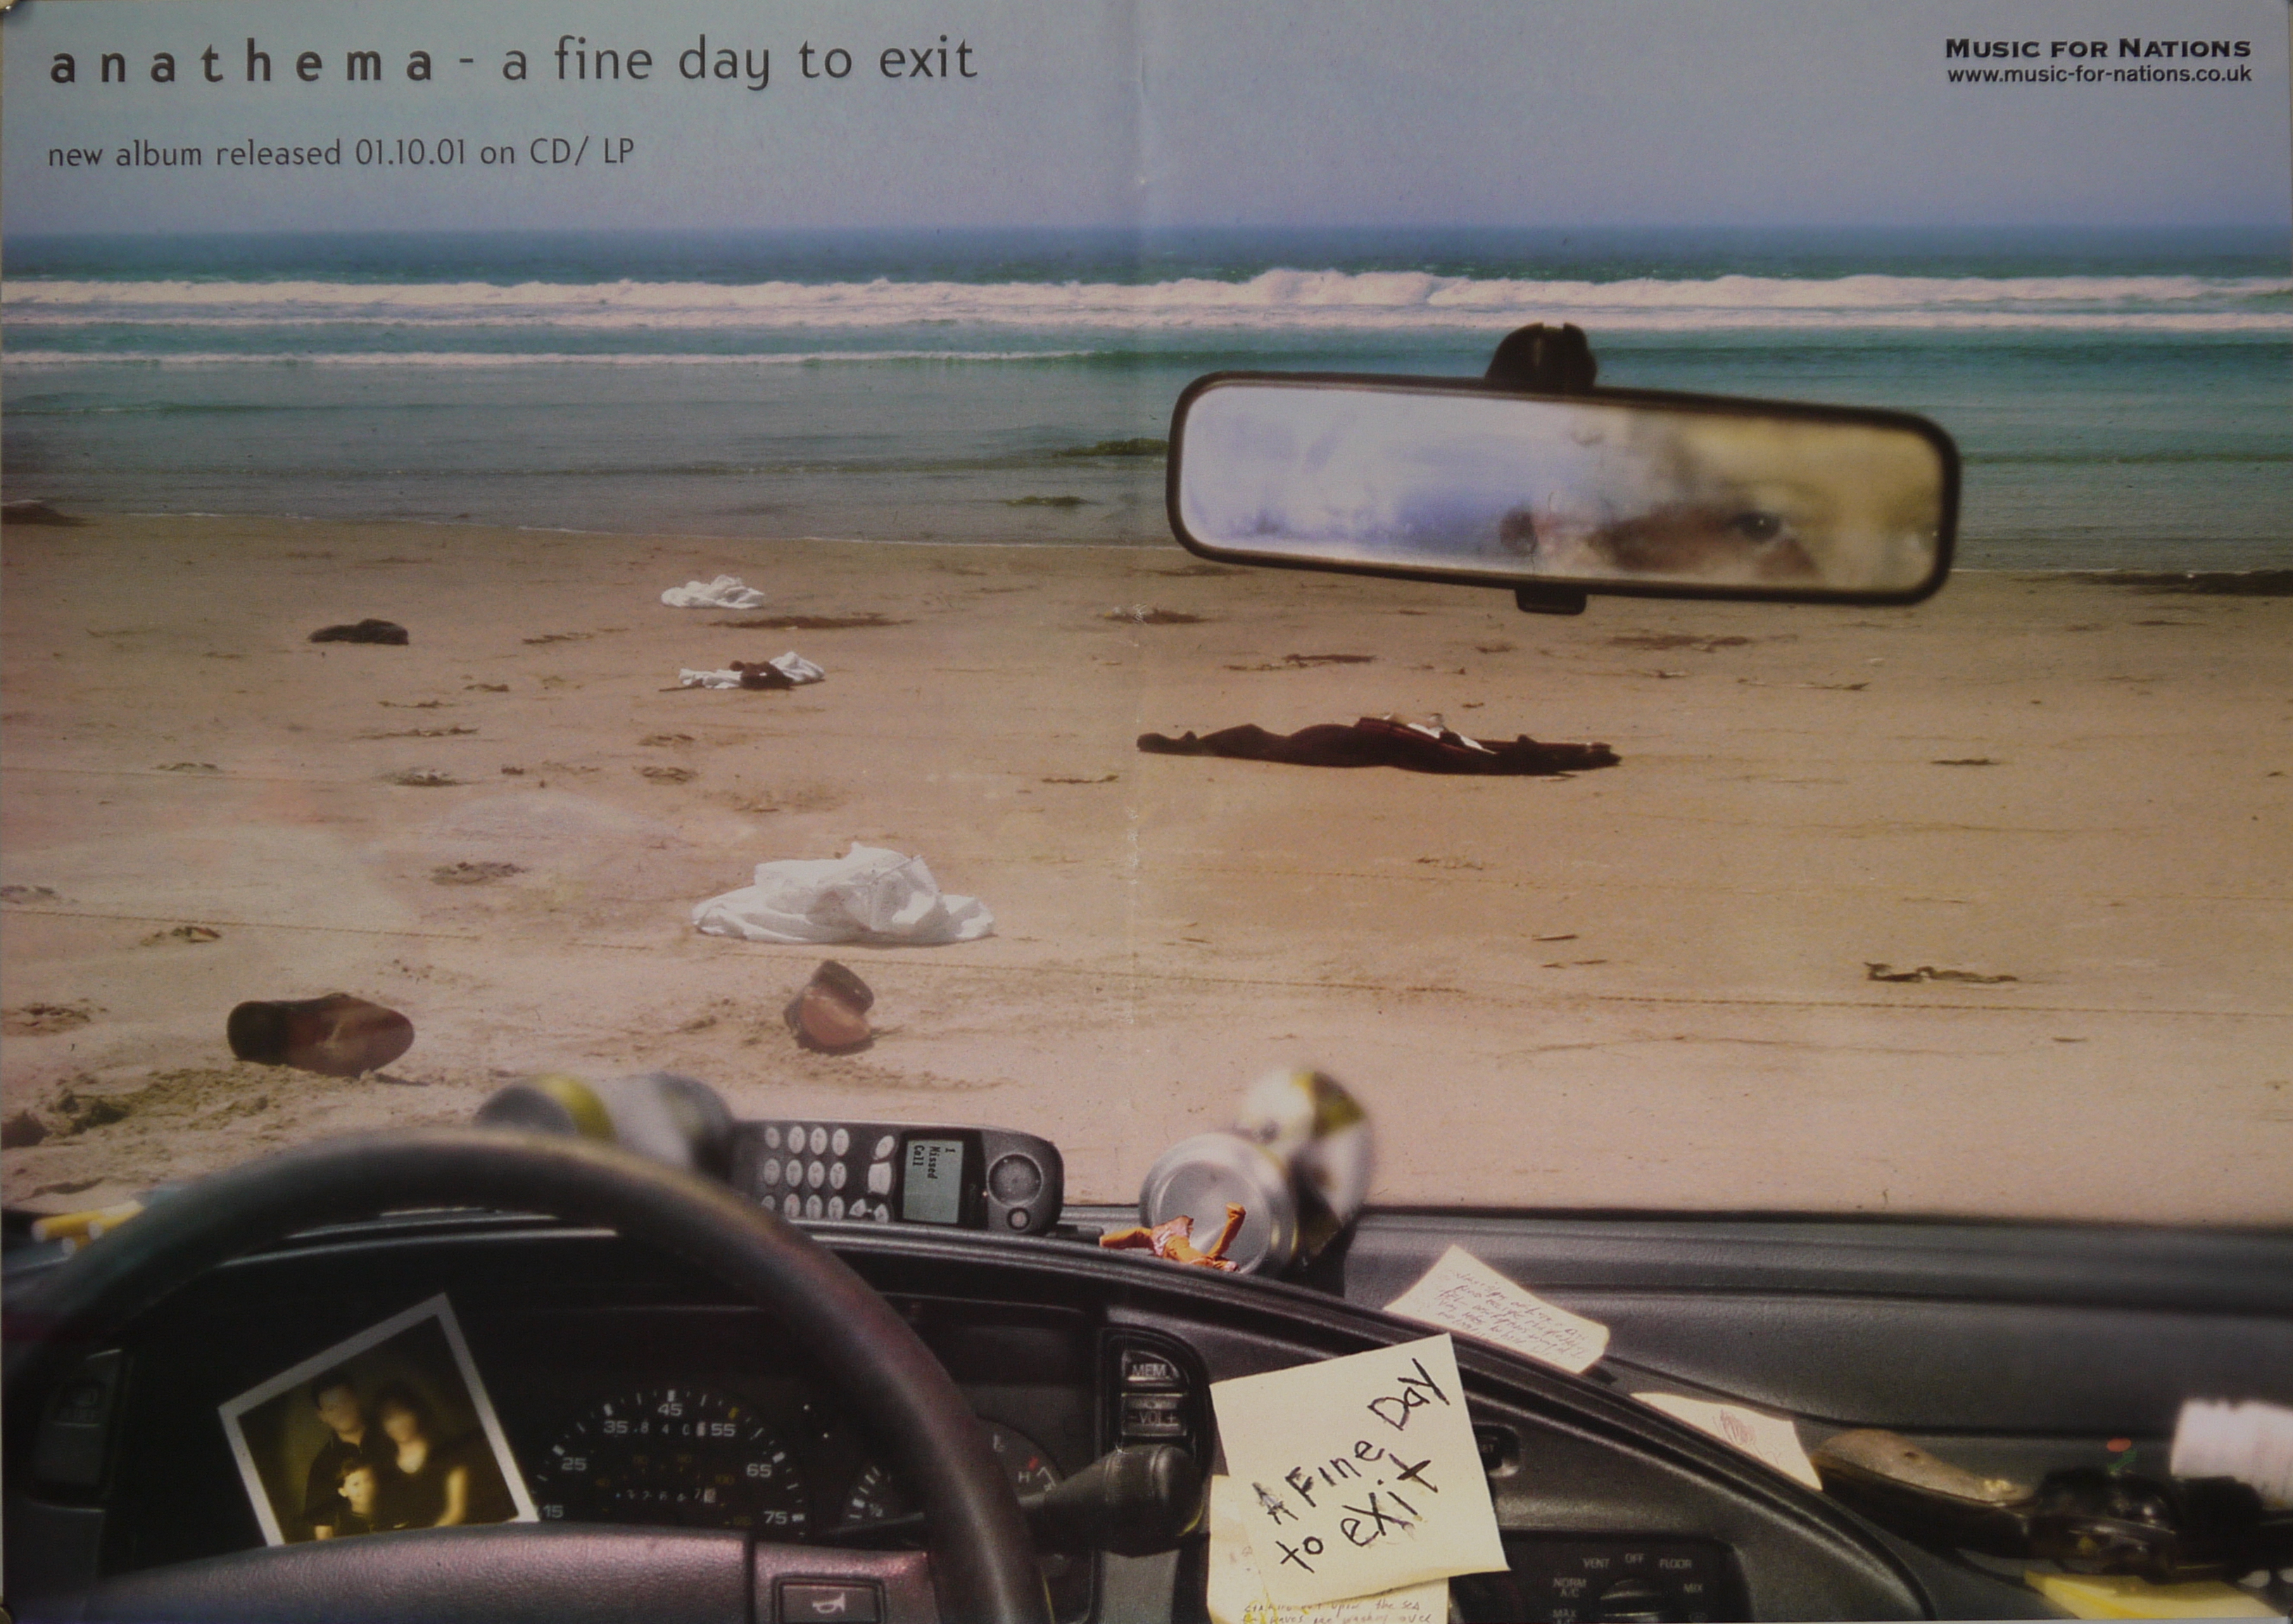 Persona in auto su una spiaggia, indumenti sull'arenile, in auto lattine vuote, un cellulare, una foto di famiglia e il biglietto "A Fine Day to exit" (manifesto) - ambito inglese (inizio XXI)